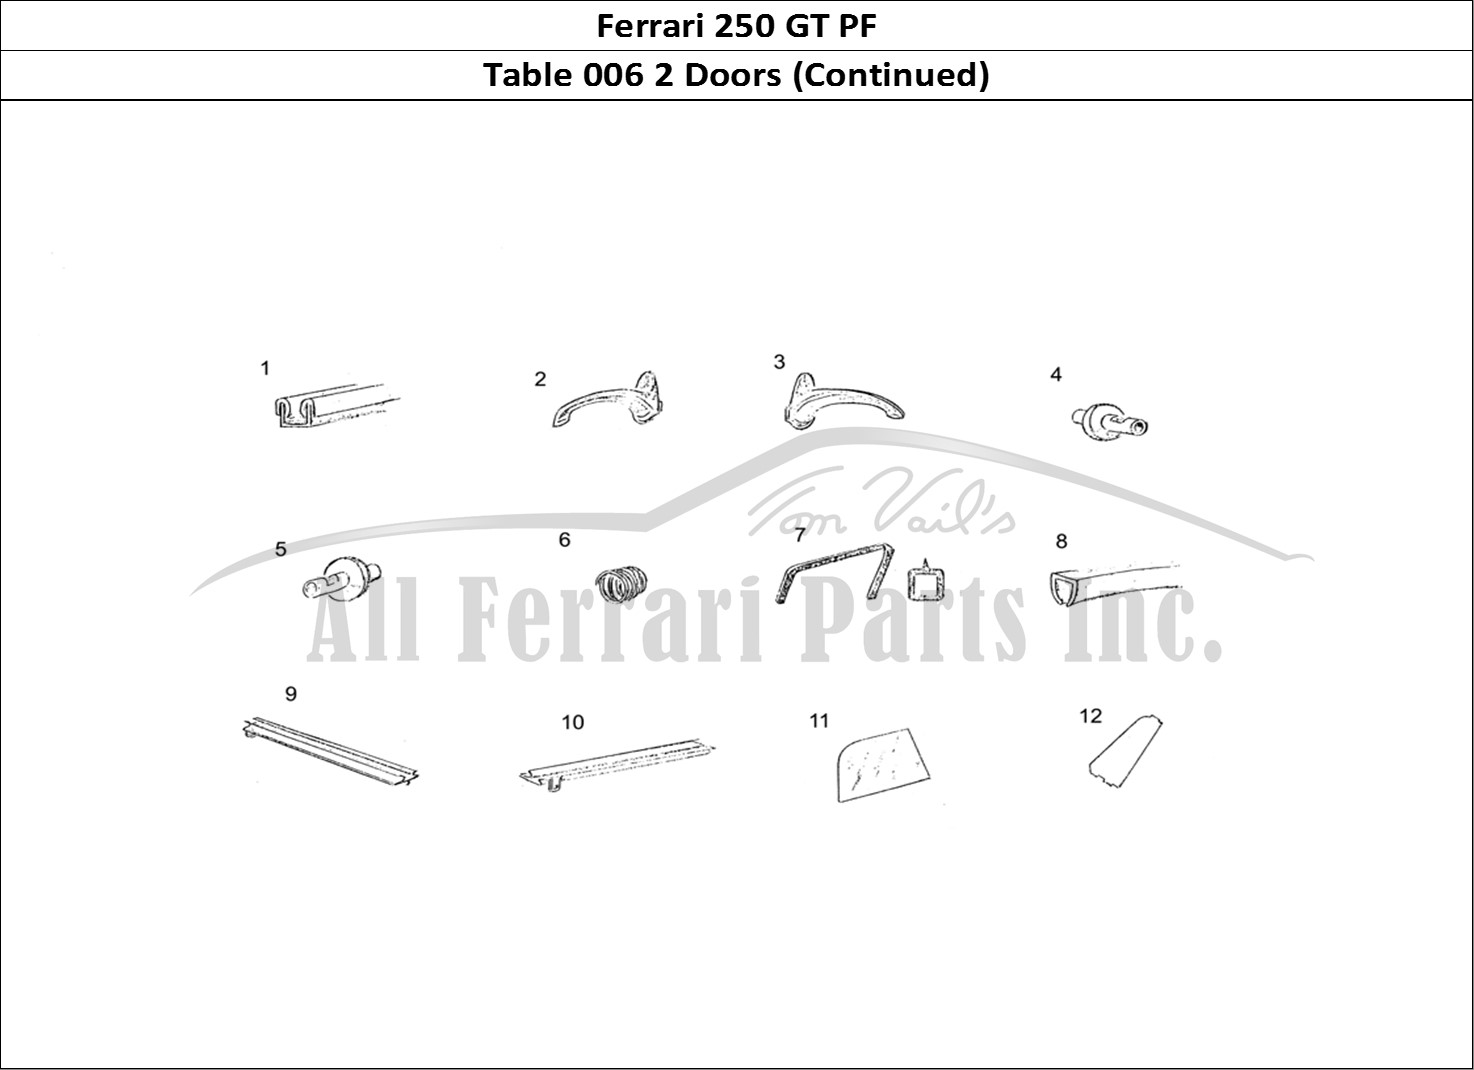 Ferrari Parts Ferrari 250 GT (Coachwork) Page 006 Door (continued)